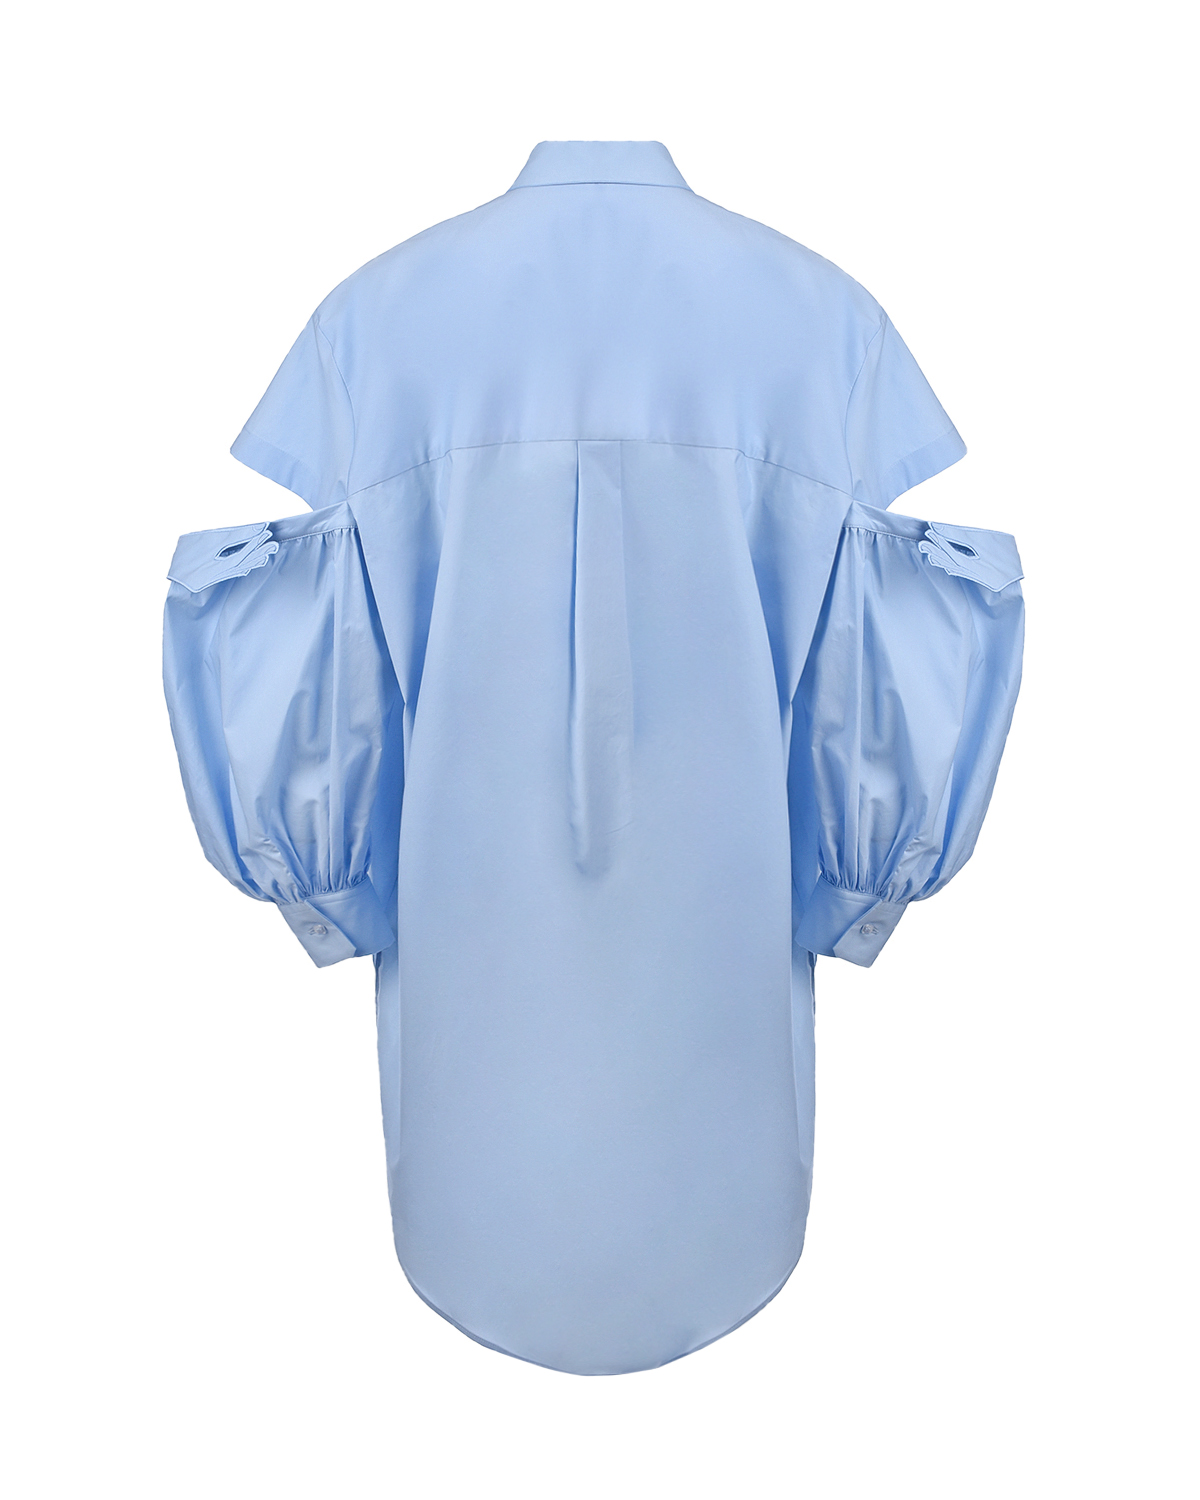 Голубое платье с разрезами на рукавах Vivetta, размер 40, цвет голубой - фото 6